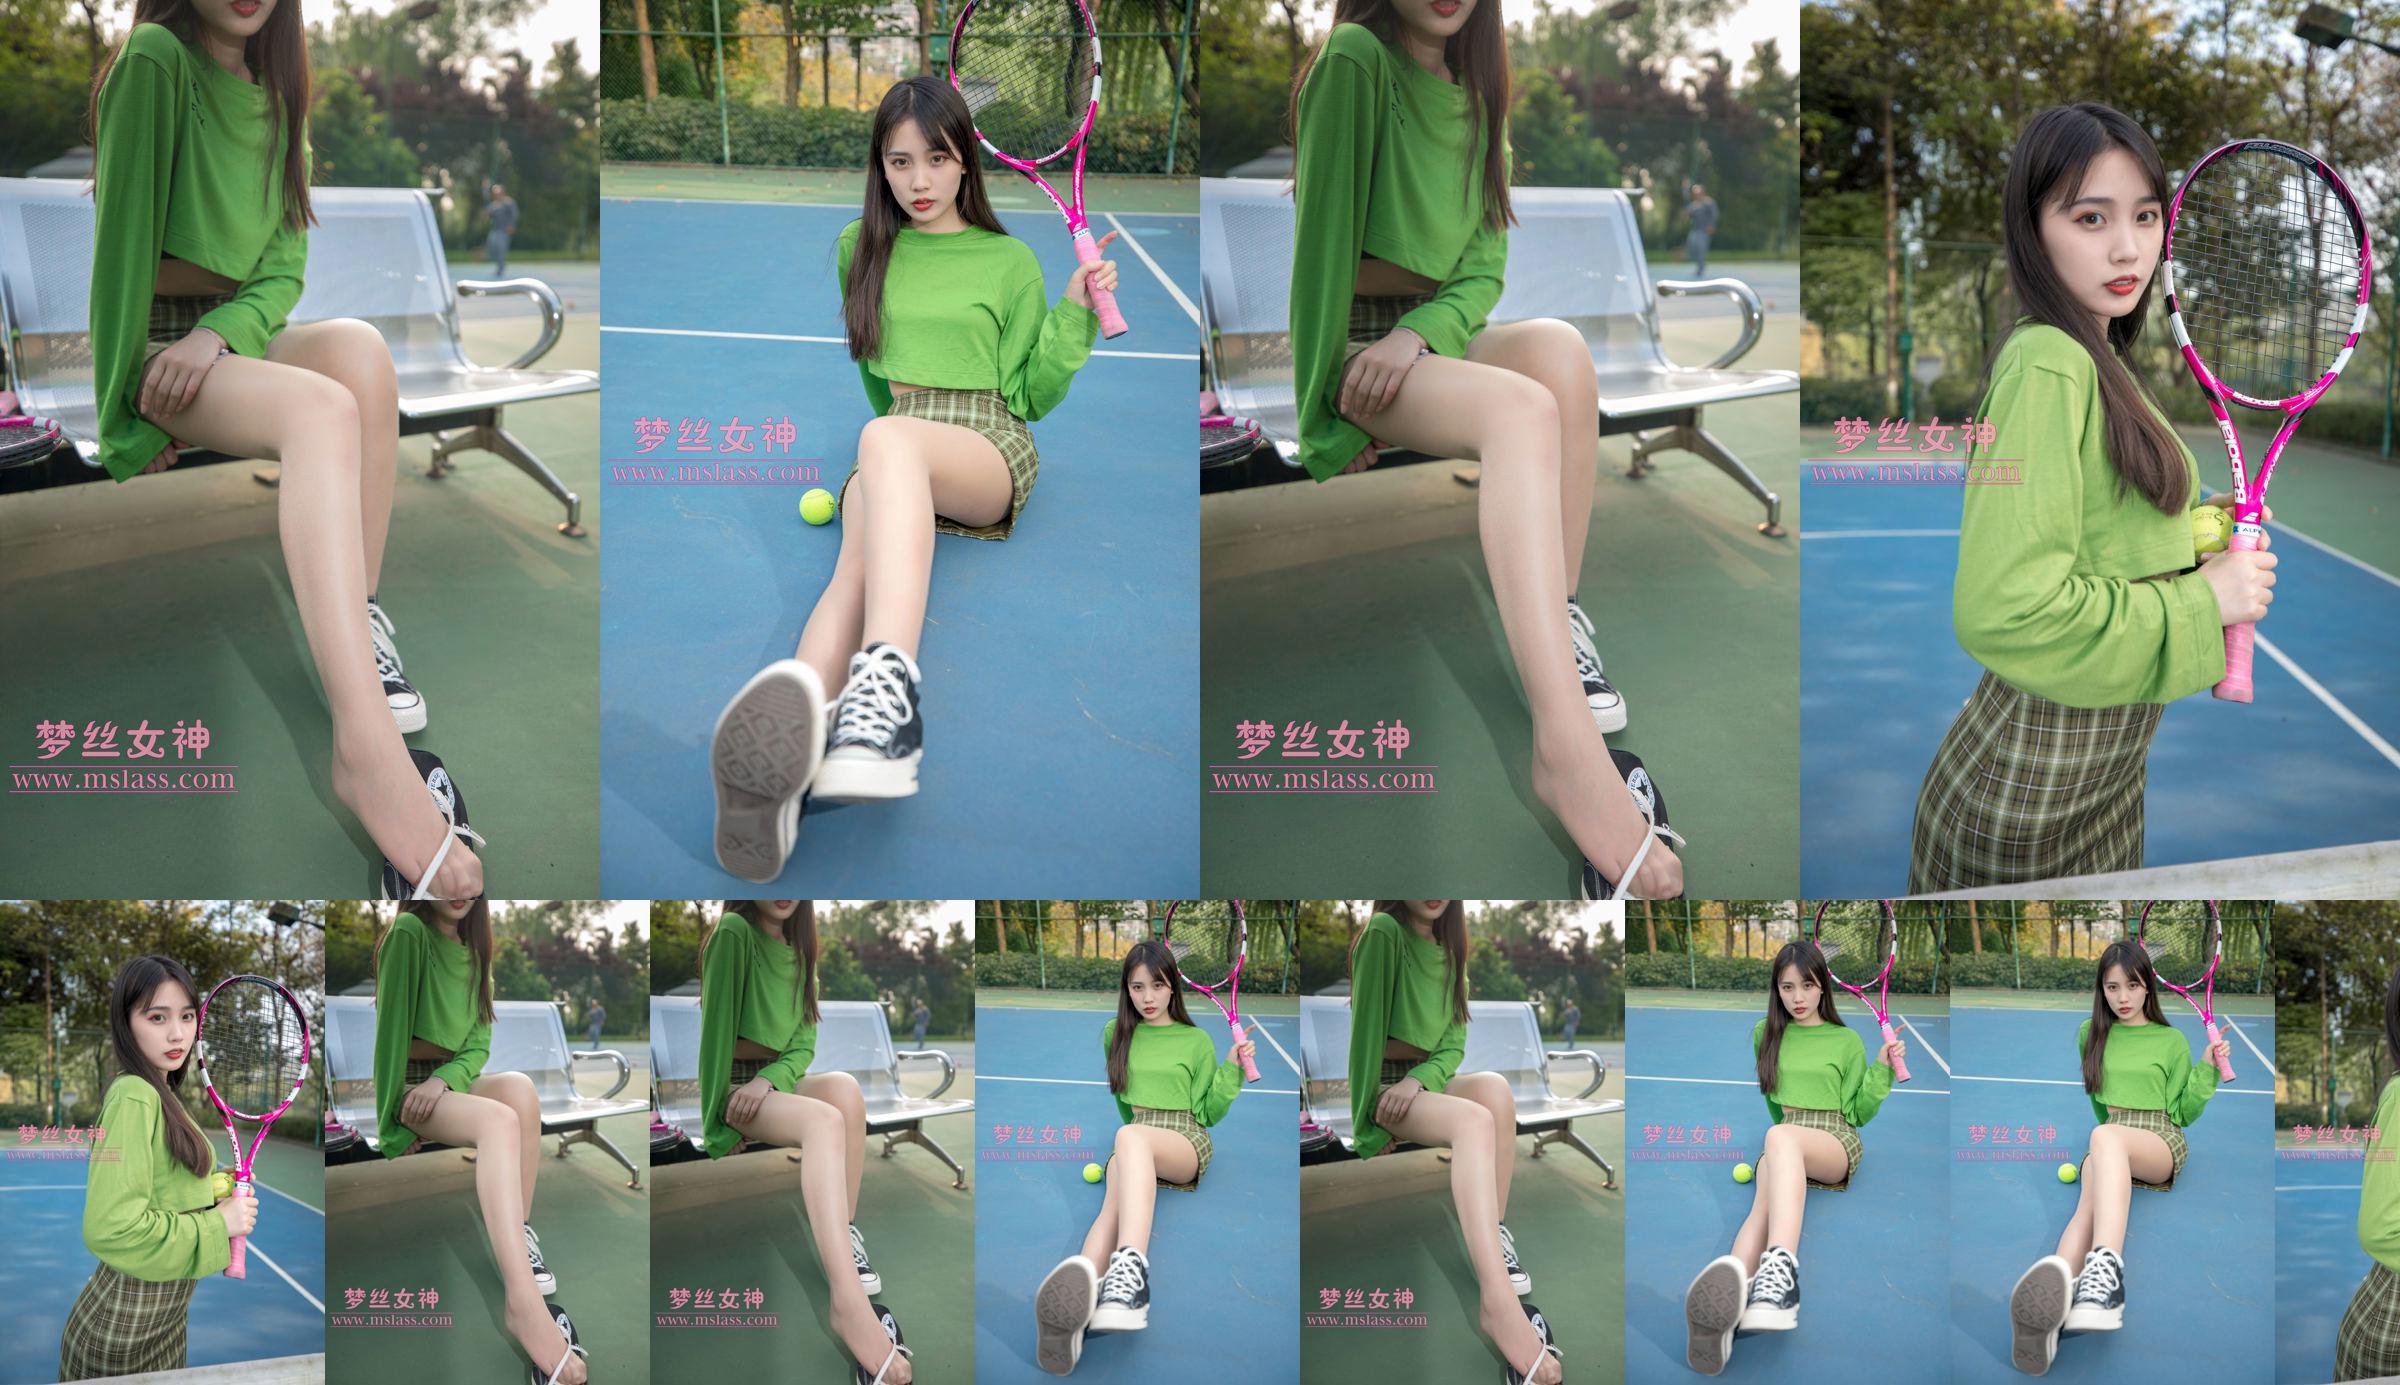 [Déesse des rêves MSLASS] Xiang Xuan Tennis Girl No.53ebf1 Page 3